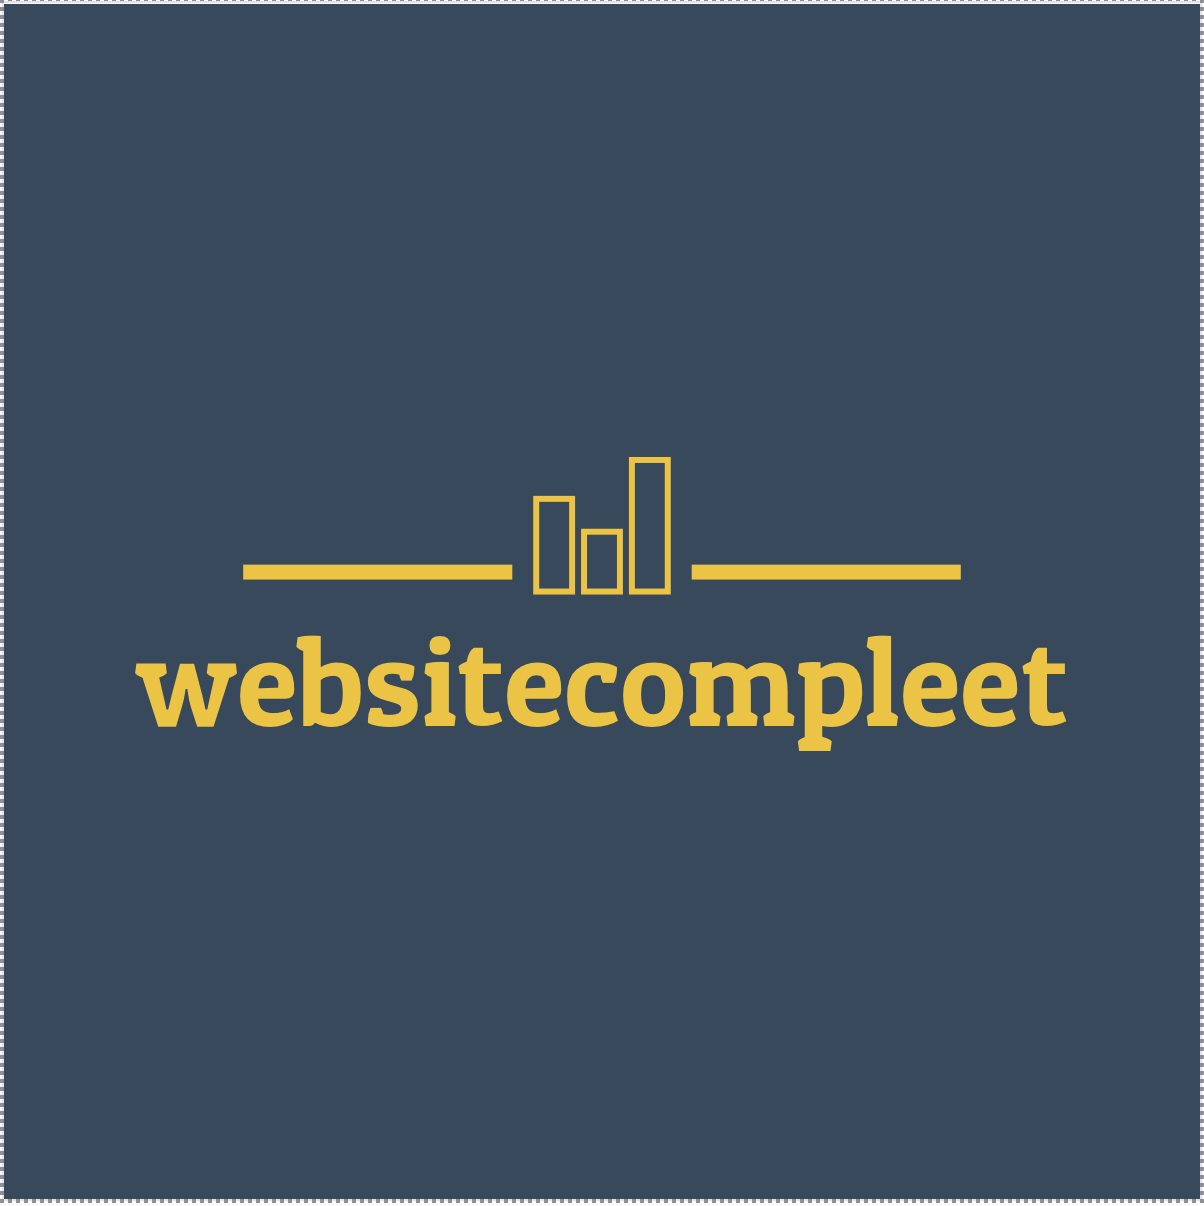 Websitecompleet